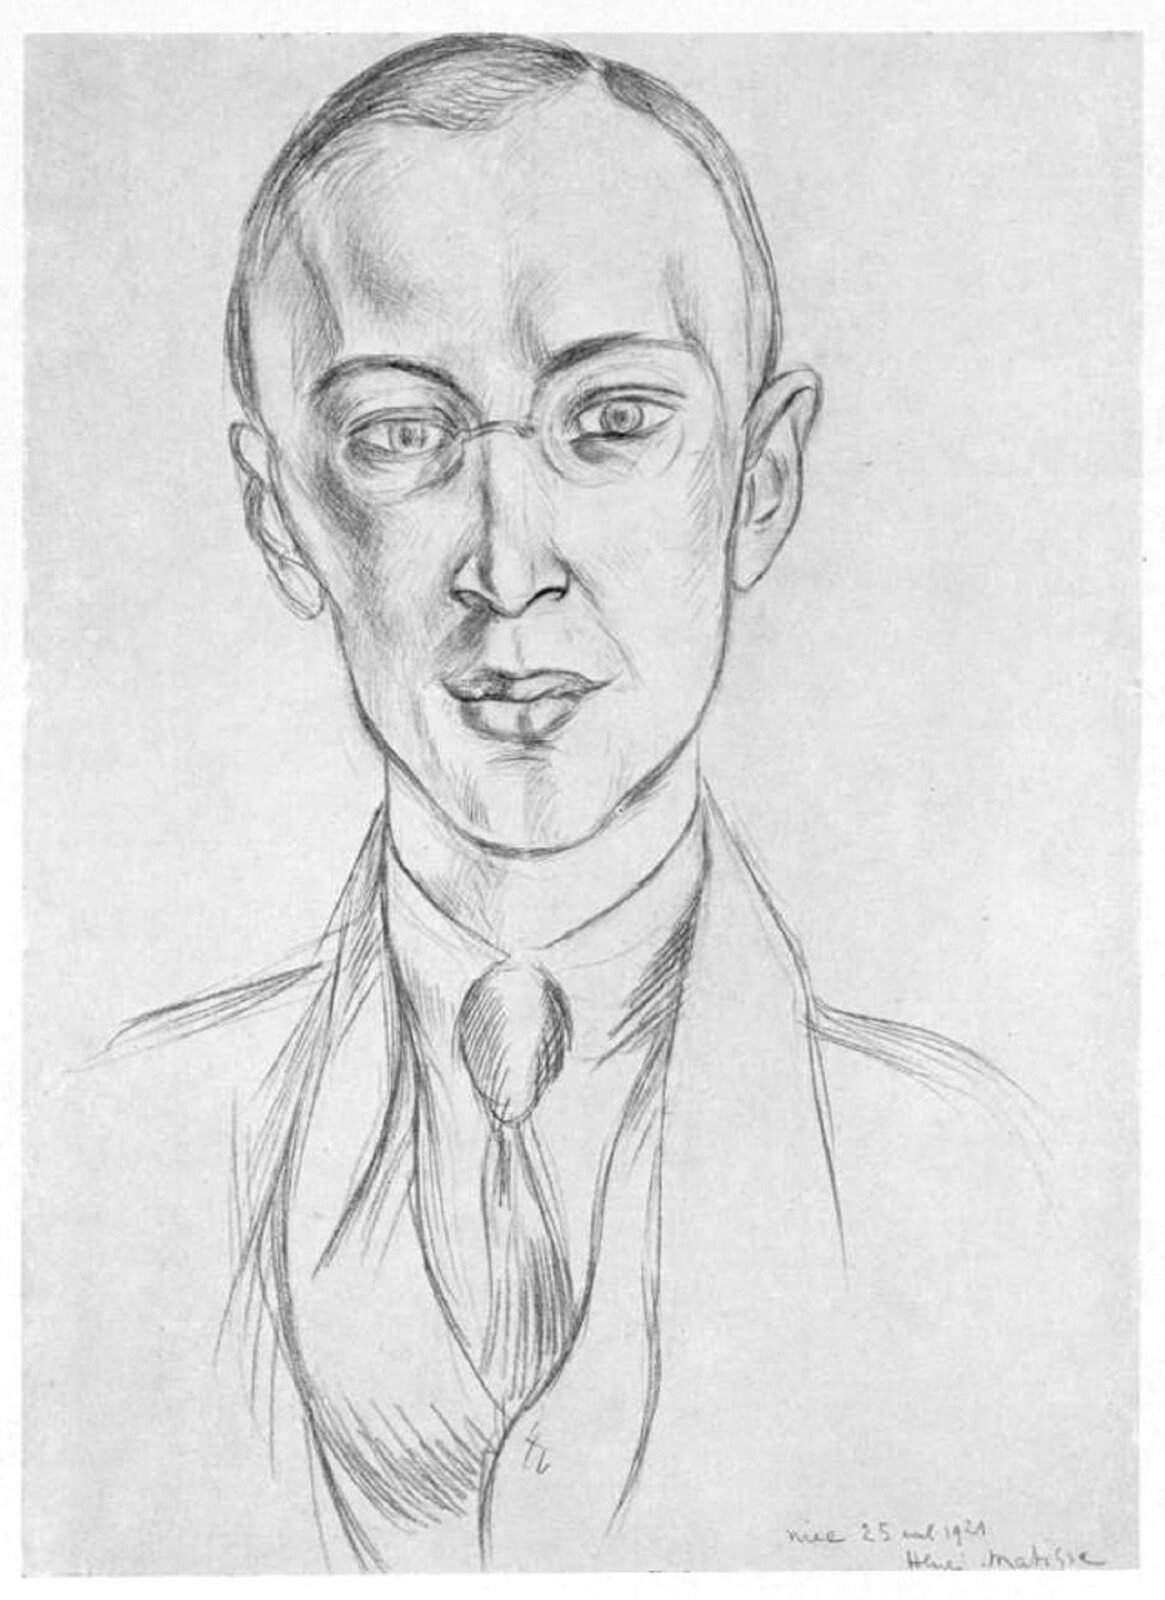 Ilustracja przedstawia portret rysunkowy Siergieja Prokofiewa autorstwa Henriego Matisse, podczas premiery baletu „Błazen” w 1921 r. Mężczyzna ze smukłą, szczupłą twarzą. Ubrany elegancko w garnitur, koszulę i krawat.